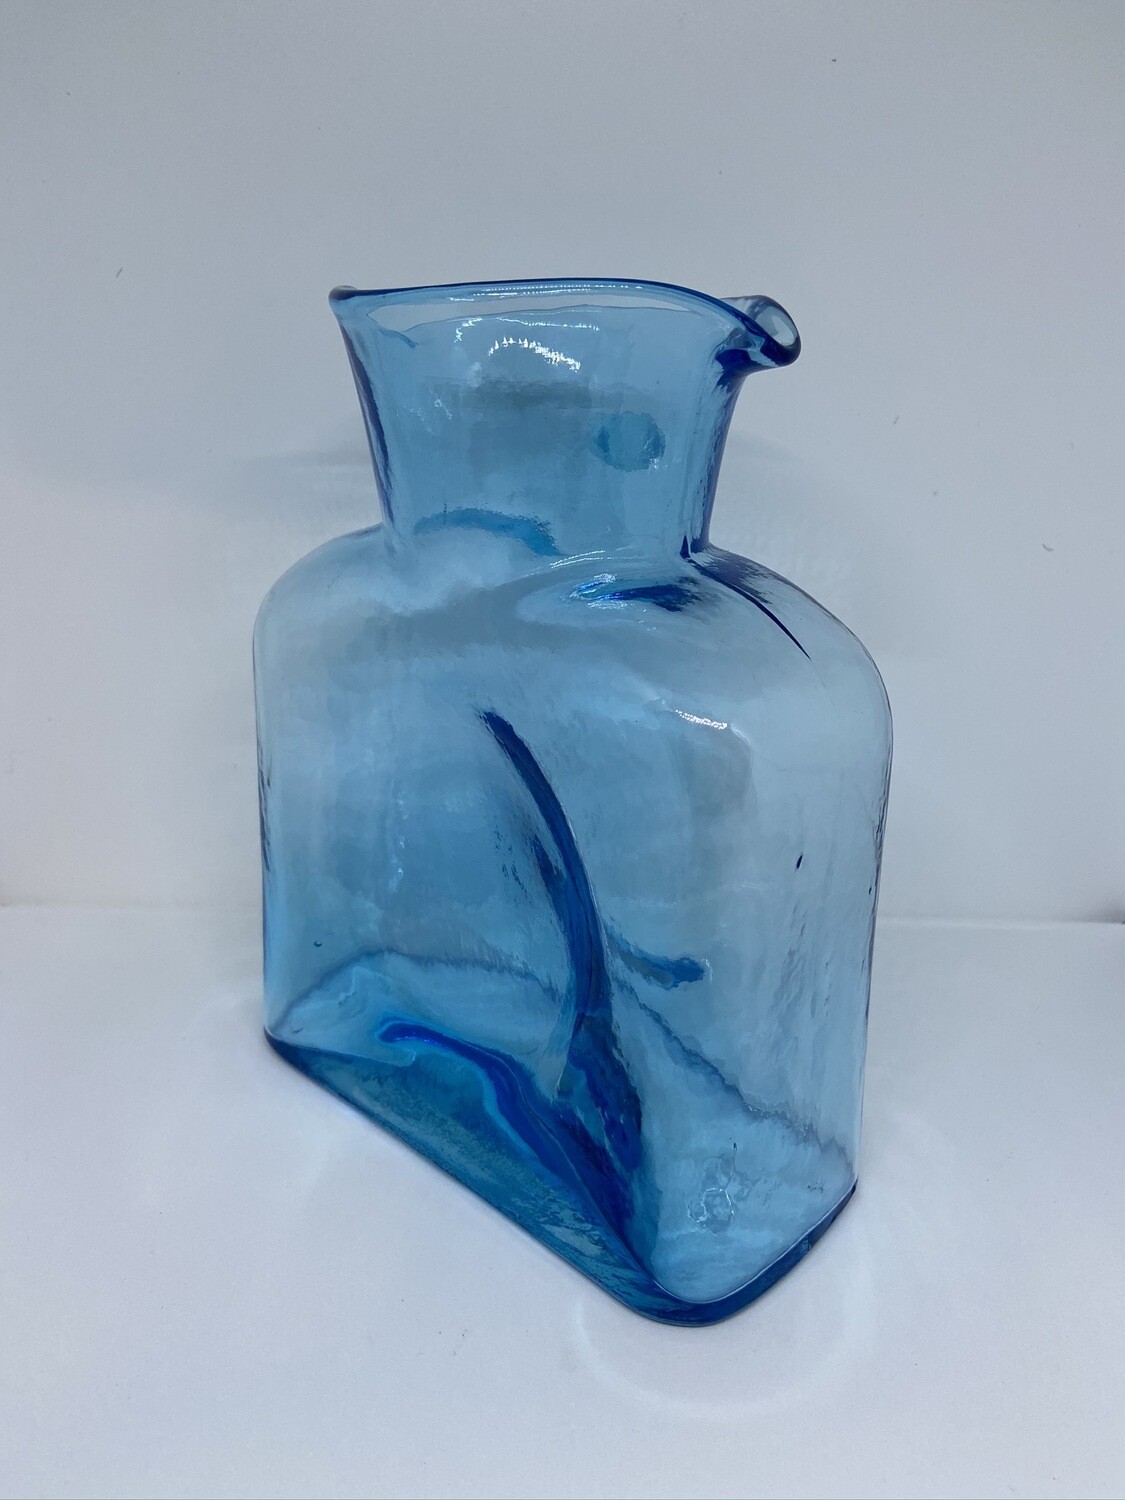 Blenko Water Bottle Ice Blue 384-28